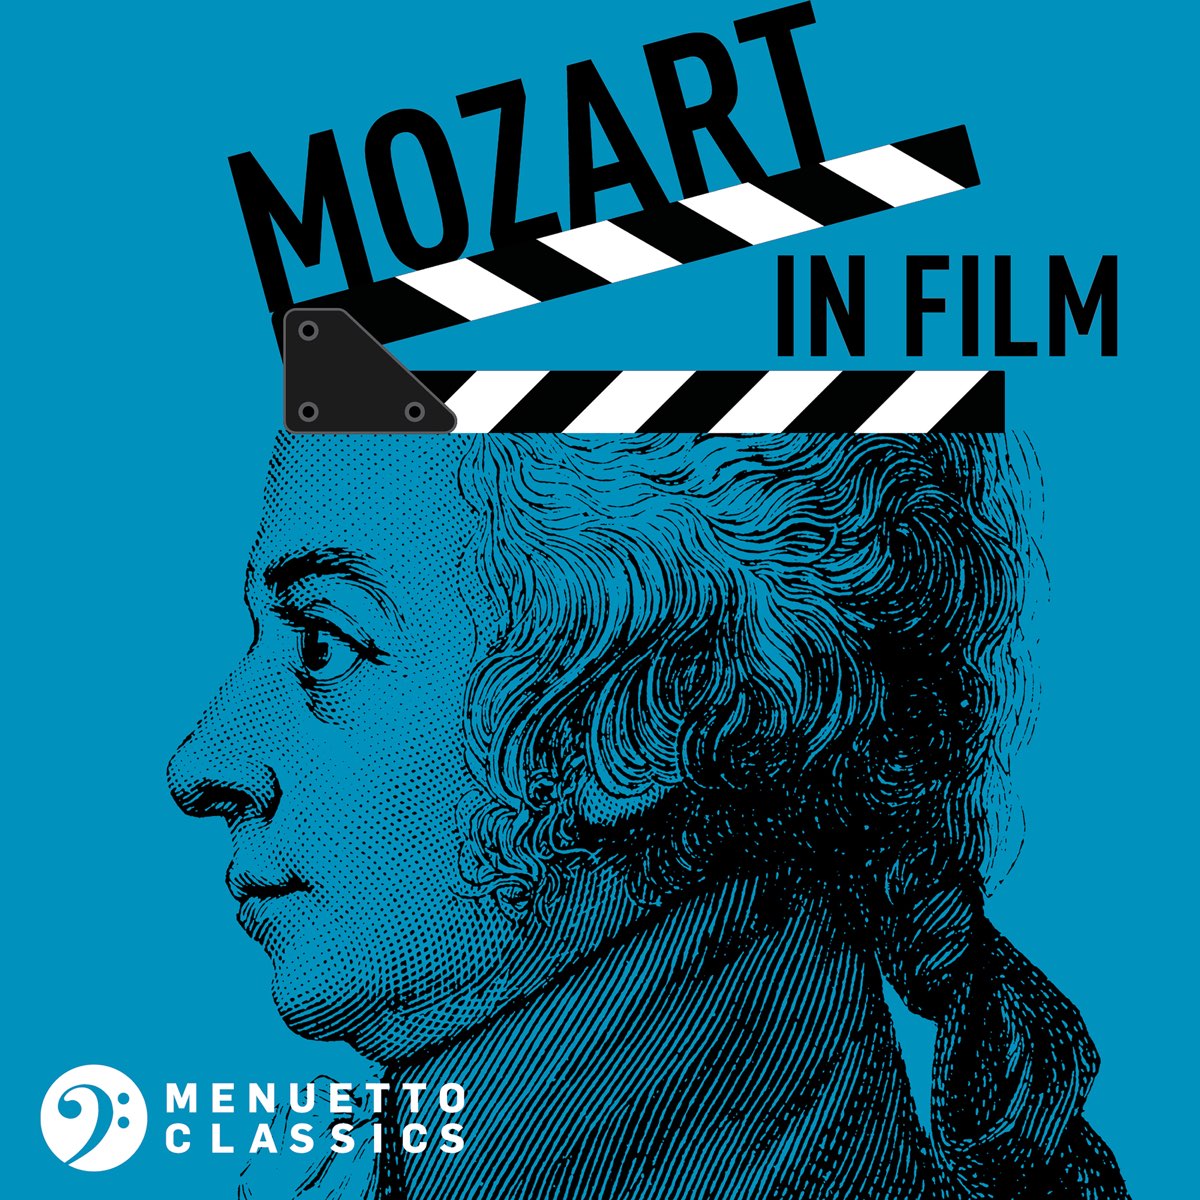 Mozart in Film par Multi-interprètes sur Apple Music